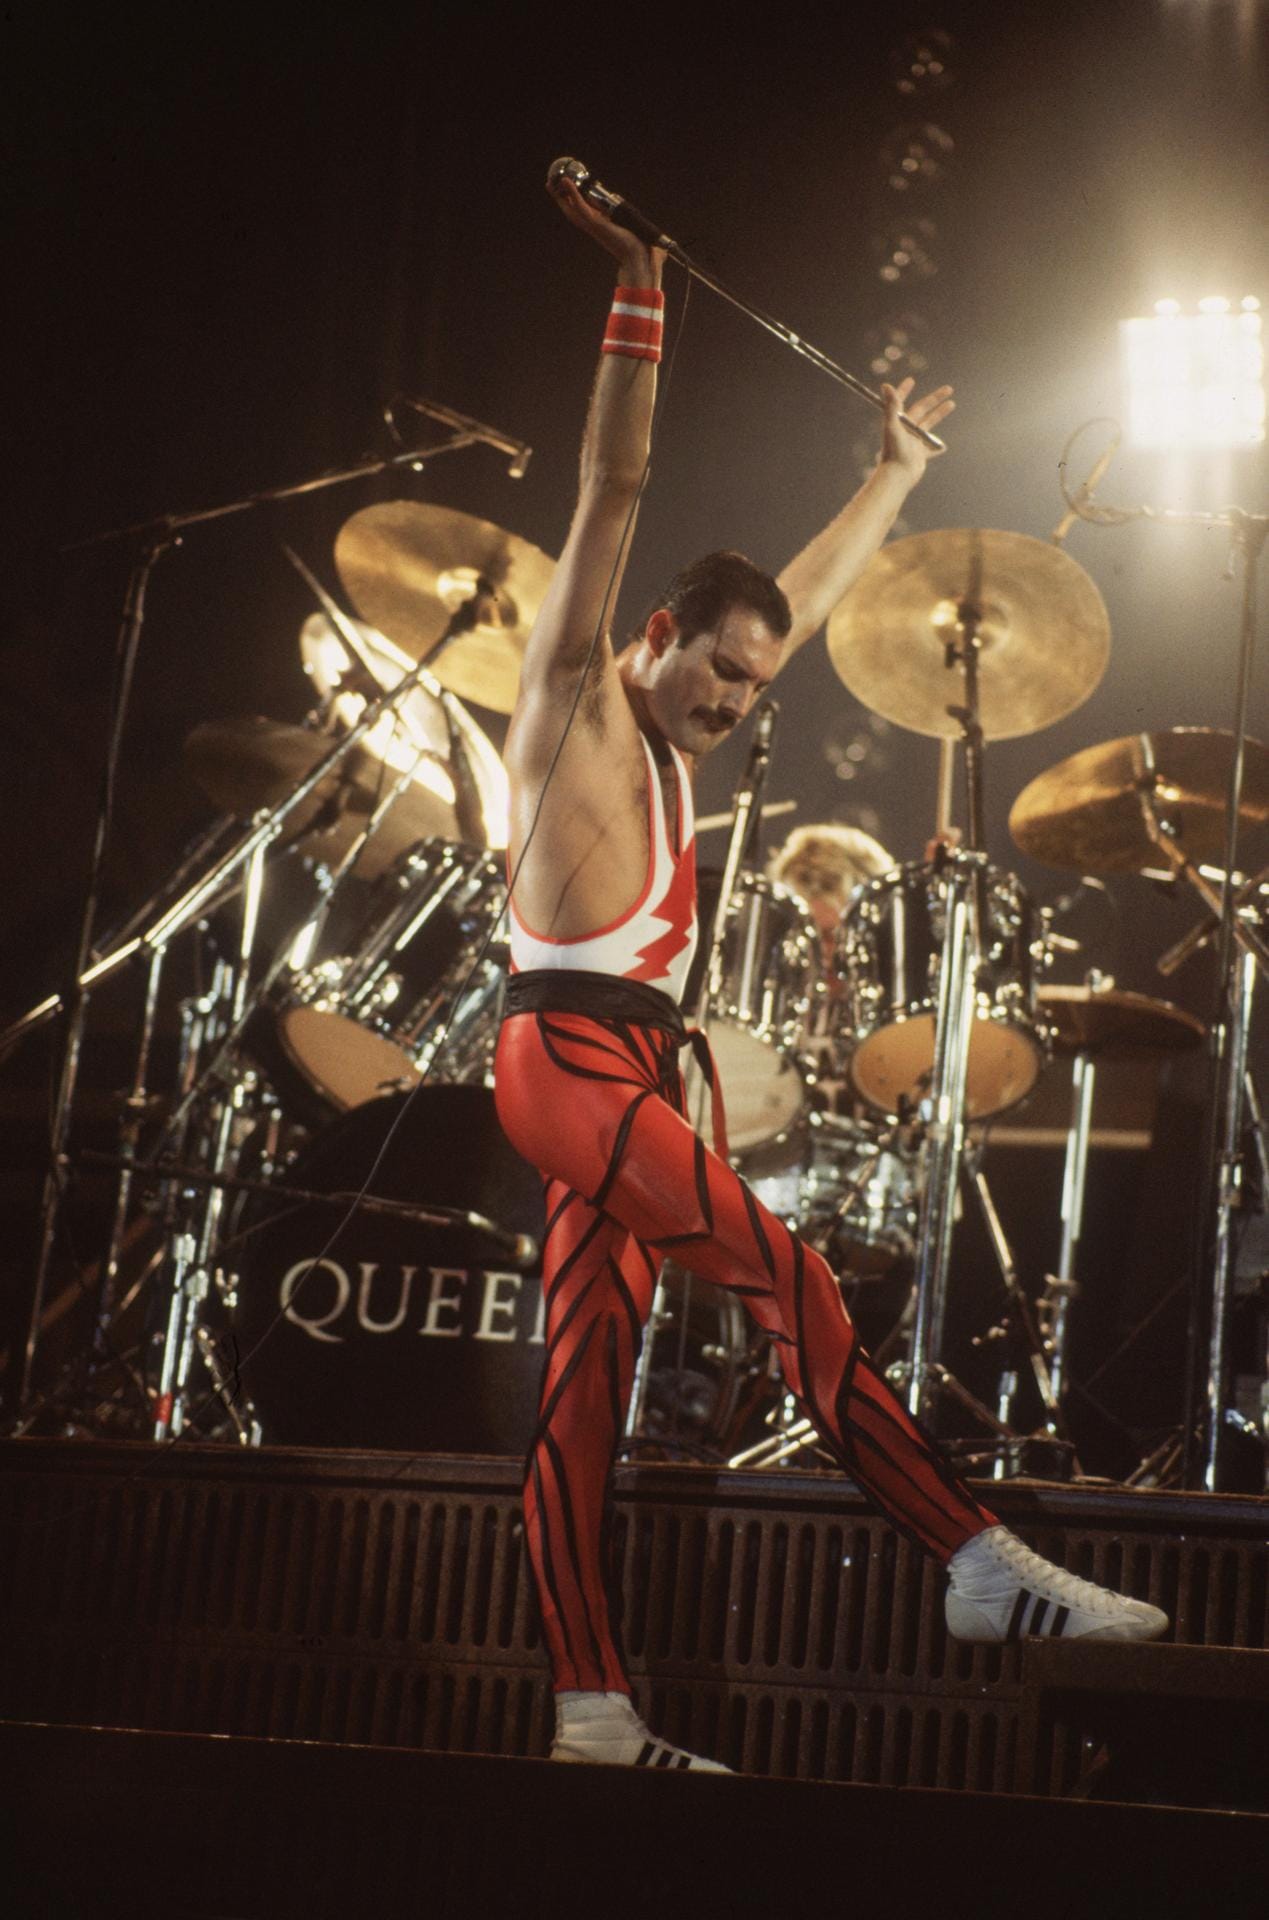 Von der großen Bühne hatte sich Freddie Mercury jedoch schon 1986 zurückgezogen. Damals war er auf dem Höhepunkt seiner Karriere.